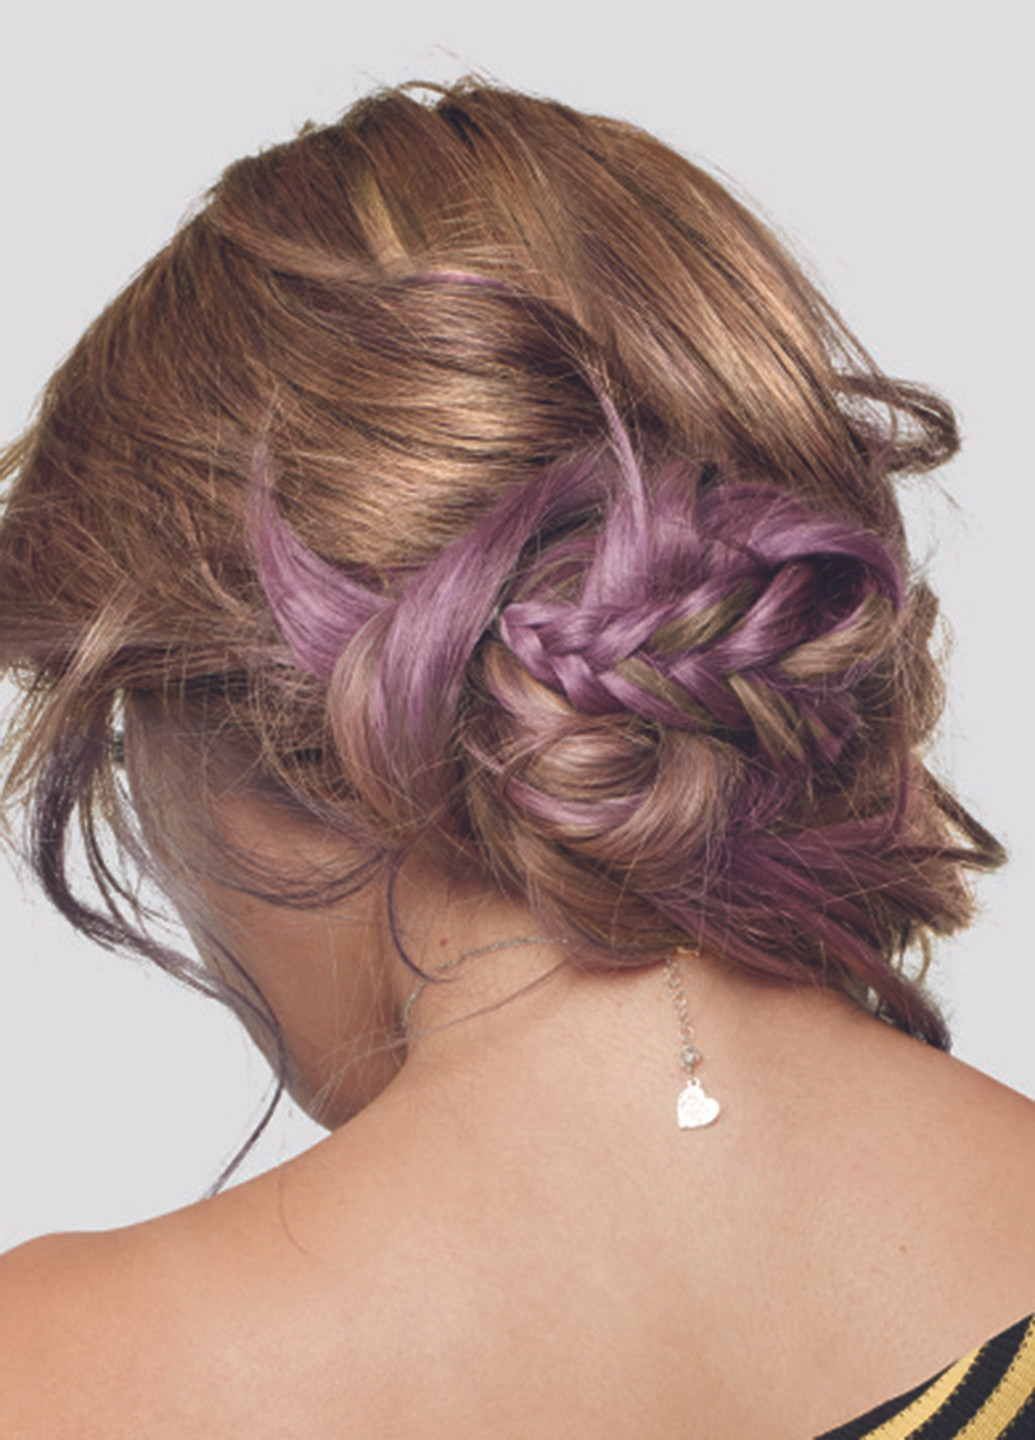 Тонирующий бальзам Colorista HairMakeup оттенок лиловый, 30 мл L'Oreal Paris (96593689)